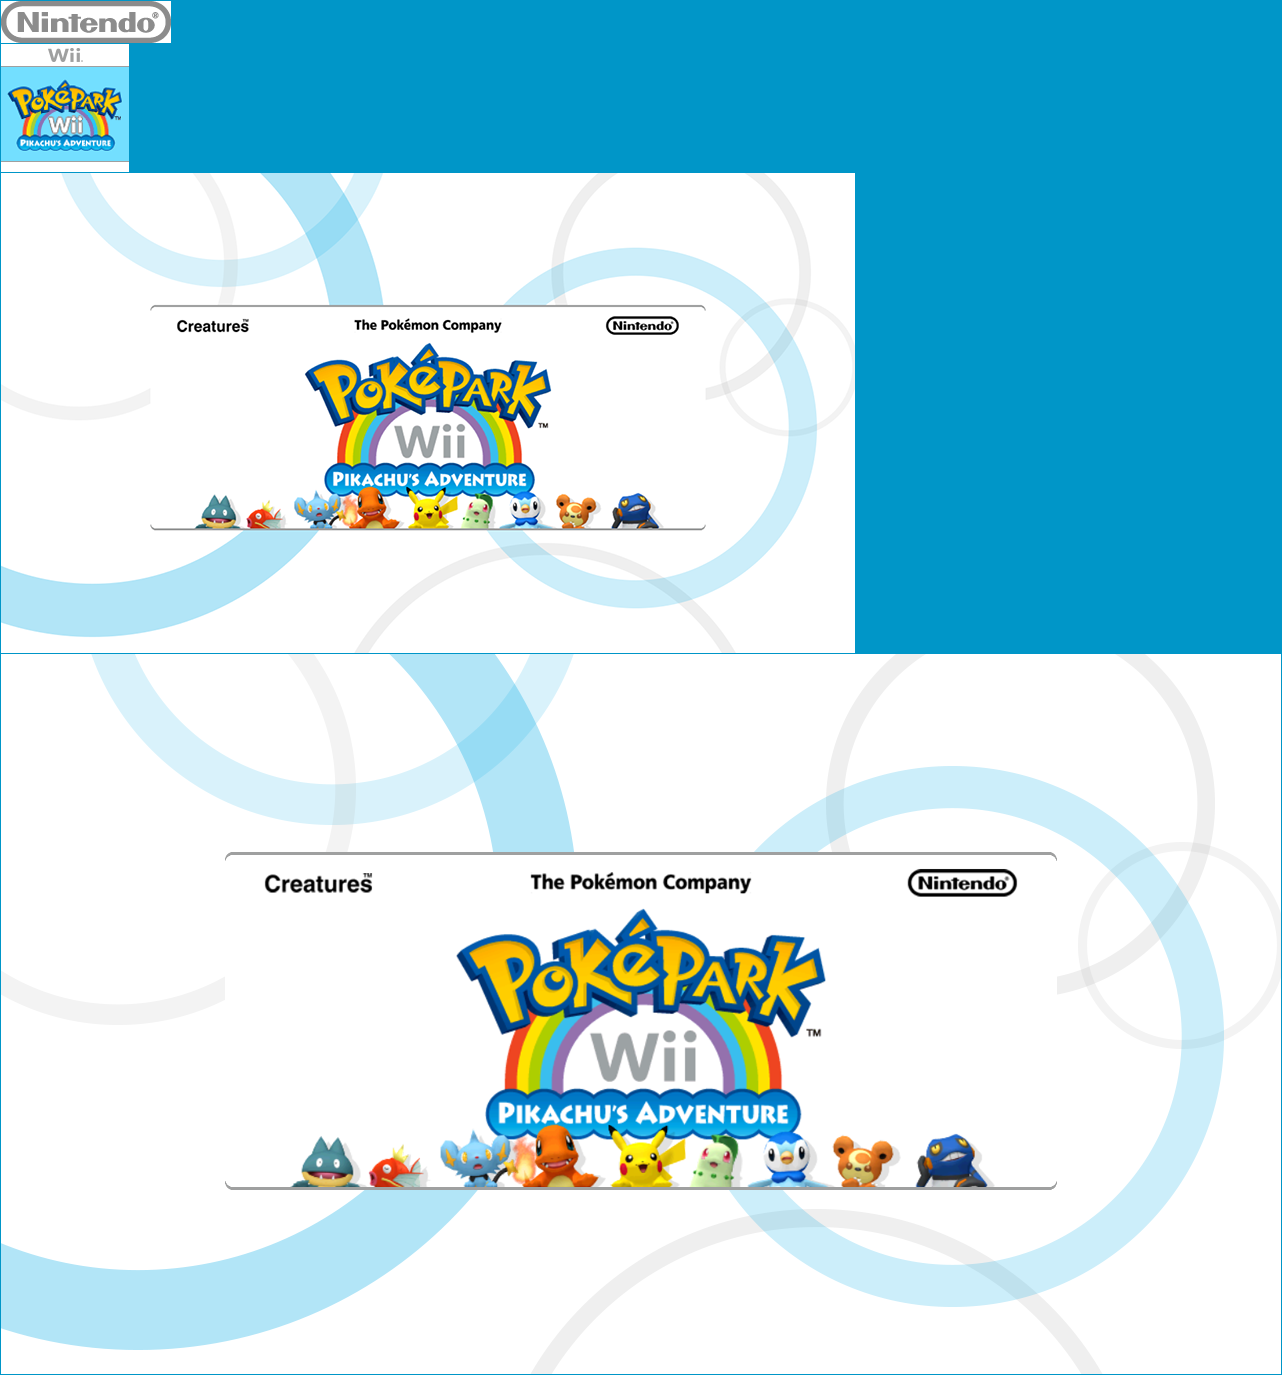 Virtual Console - PokéPark Wii: Pikachu's Adventure